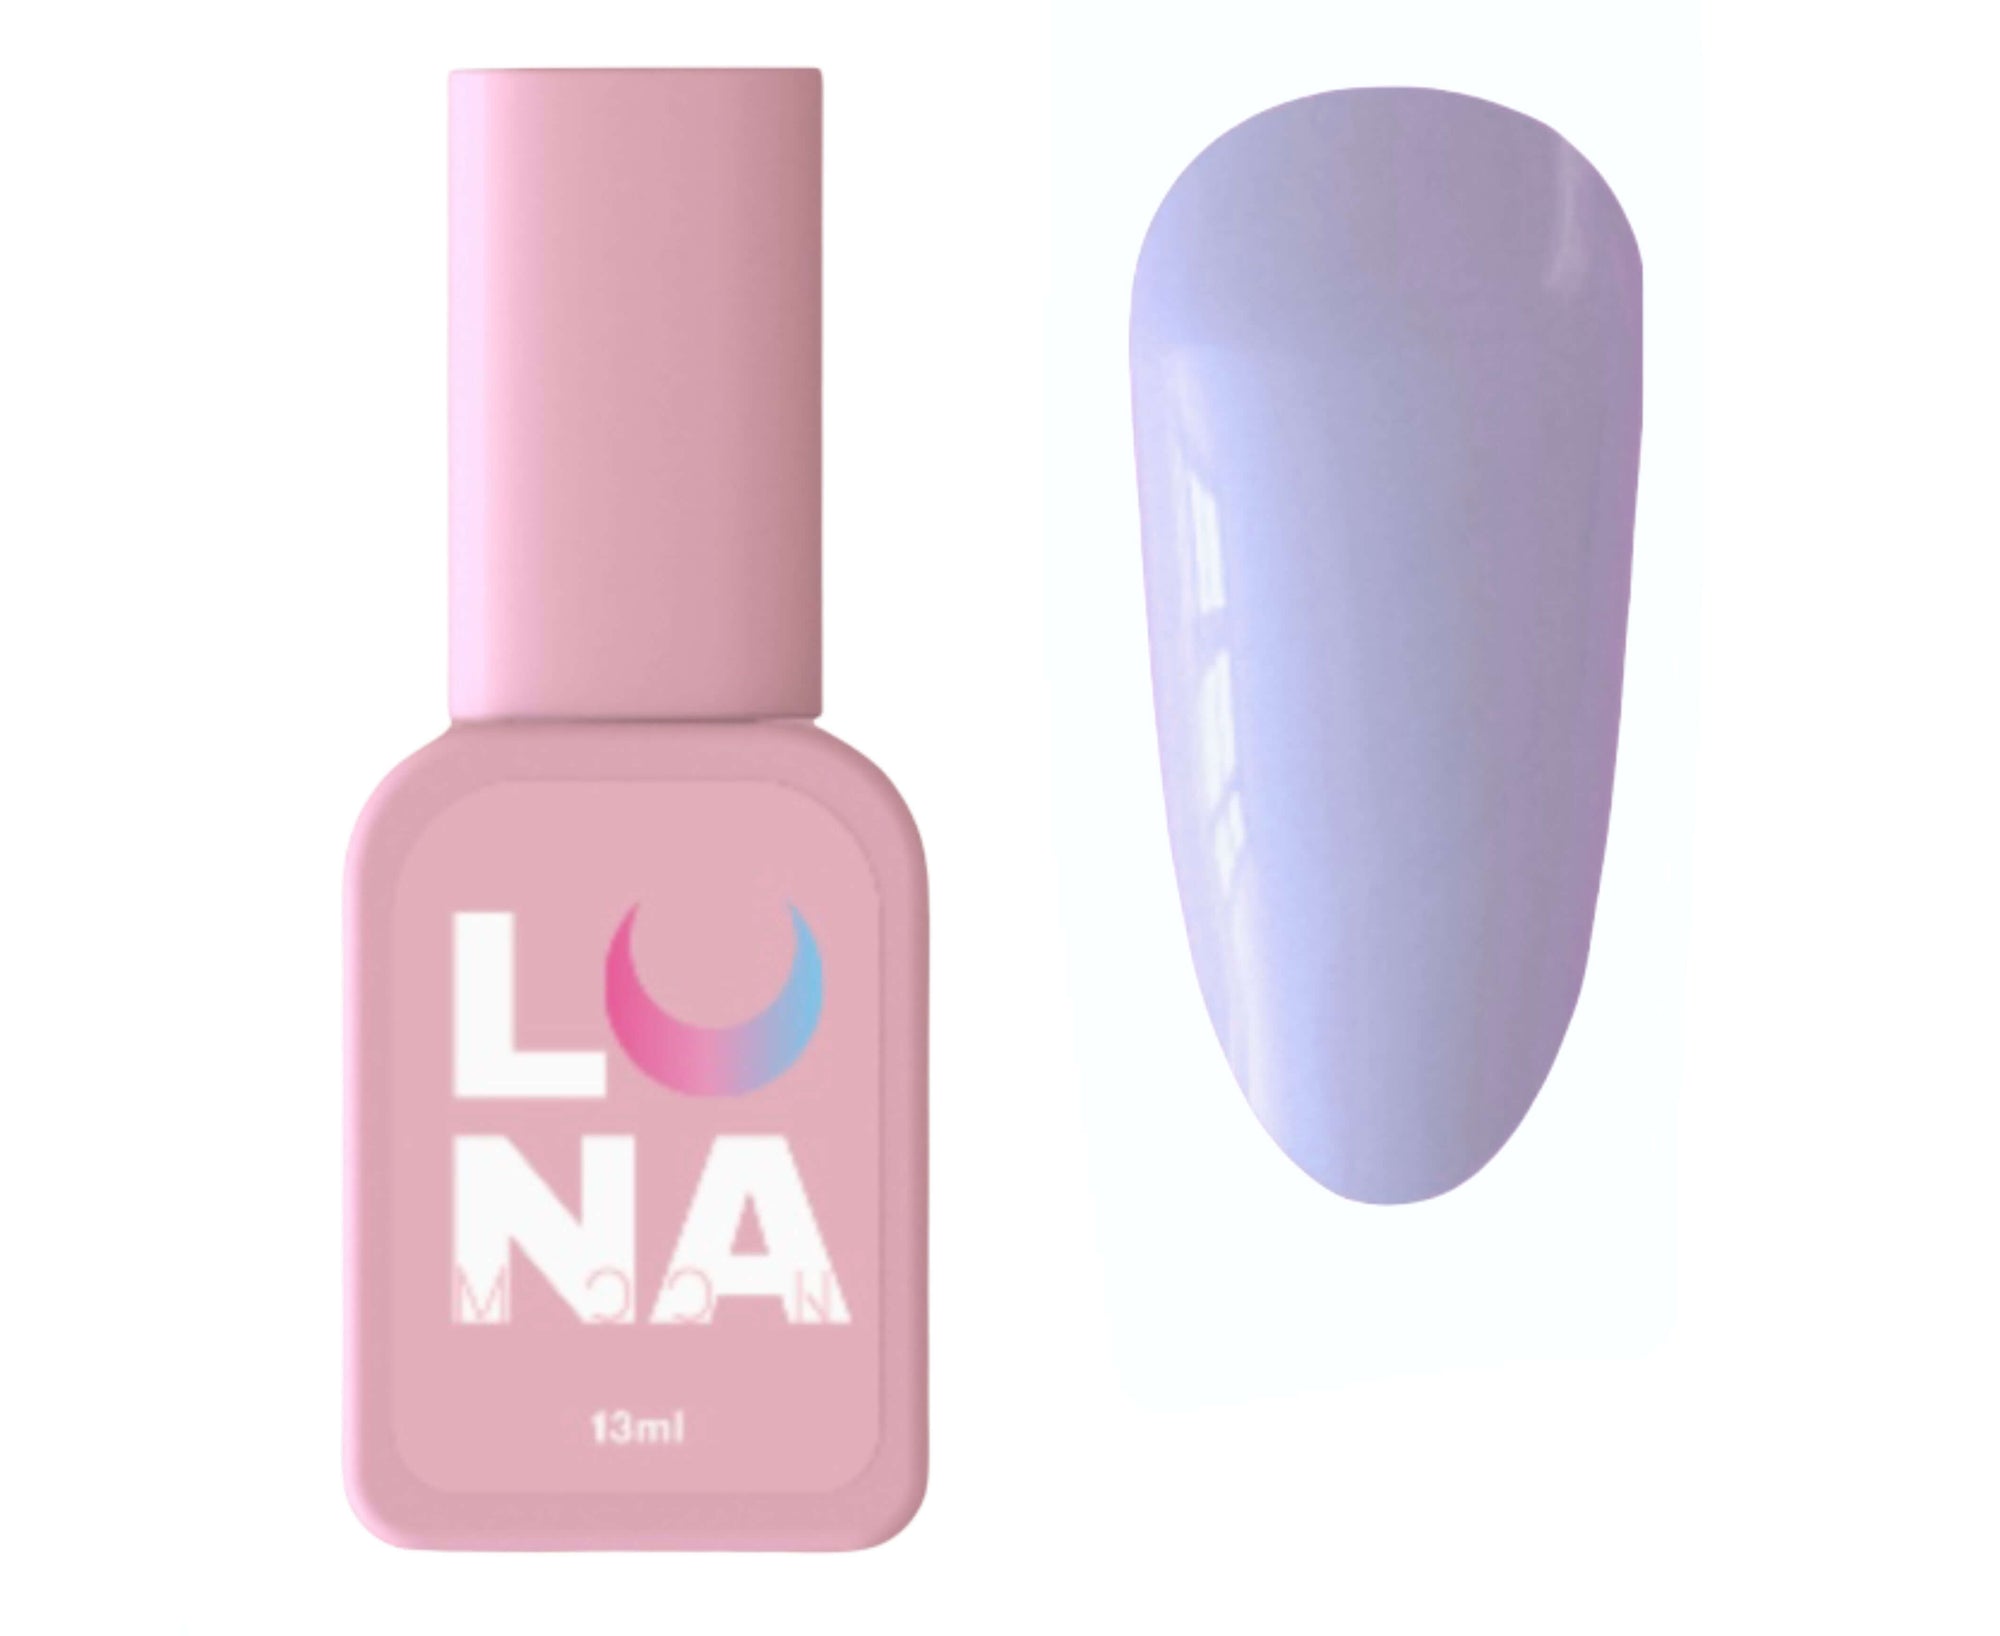 Luna Colored Rubber Base - Lilac